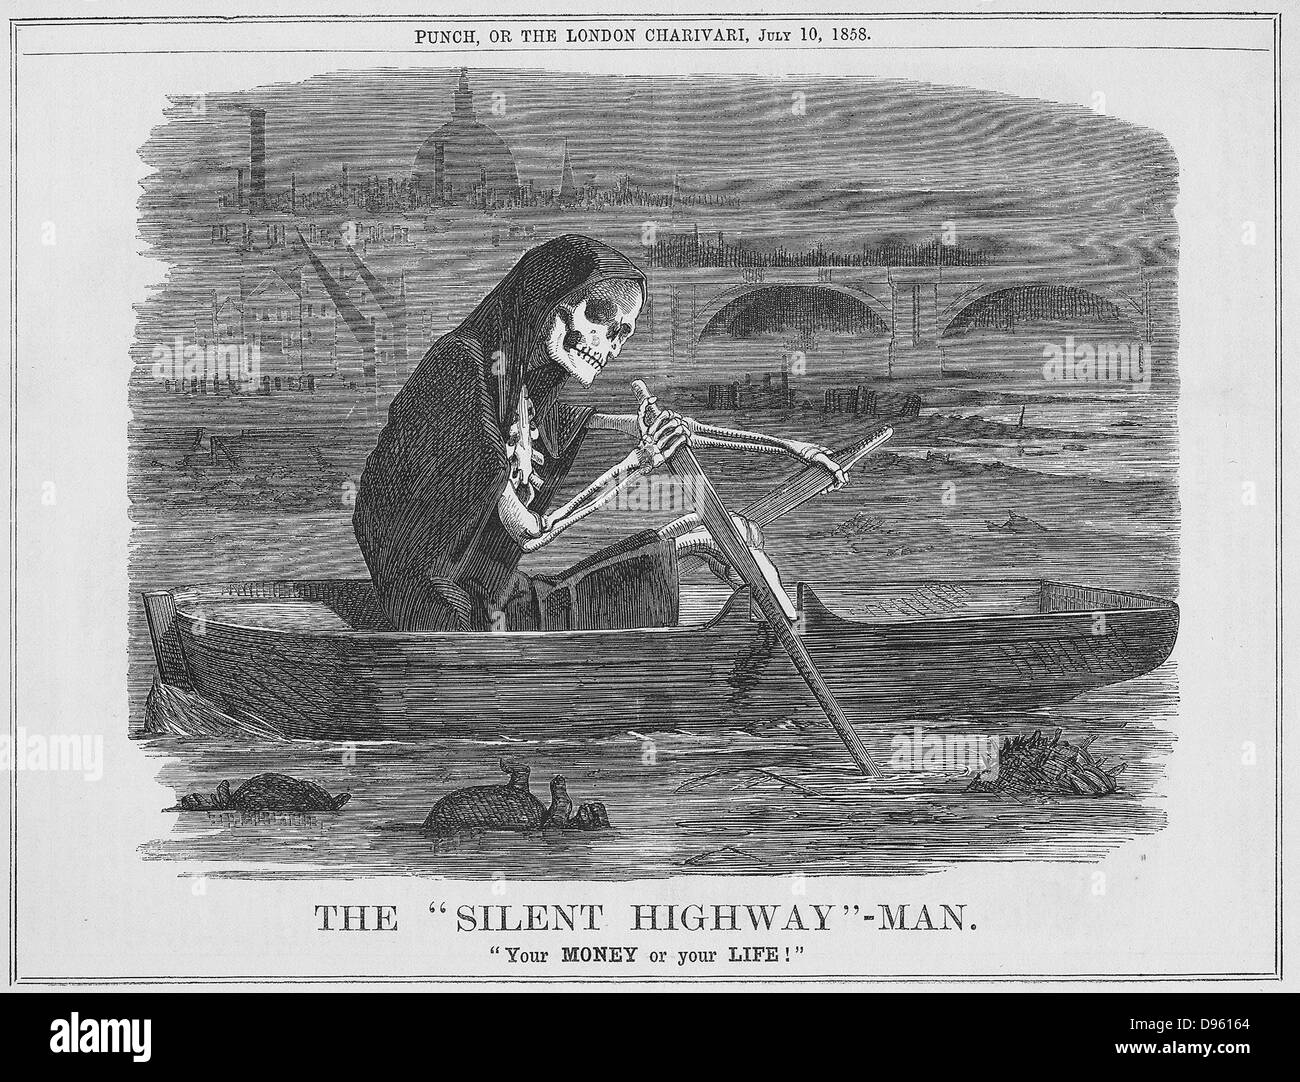 Die 'Silent Highway'': Ihr Geld Oder Ihr Leben. Mehr ein offener Abwasserkanal als ein Fluss, der widerlich Zustand der Themse in London. Cartoon von 'Lochen', London, 1858. Stockfoto